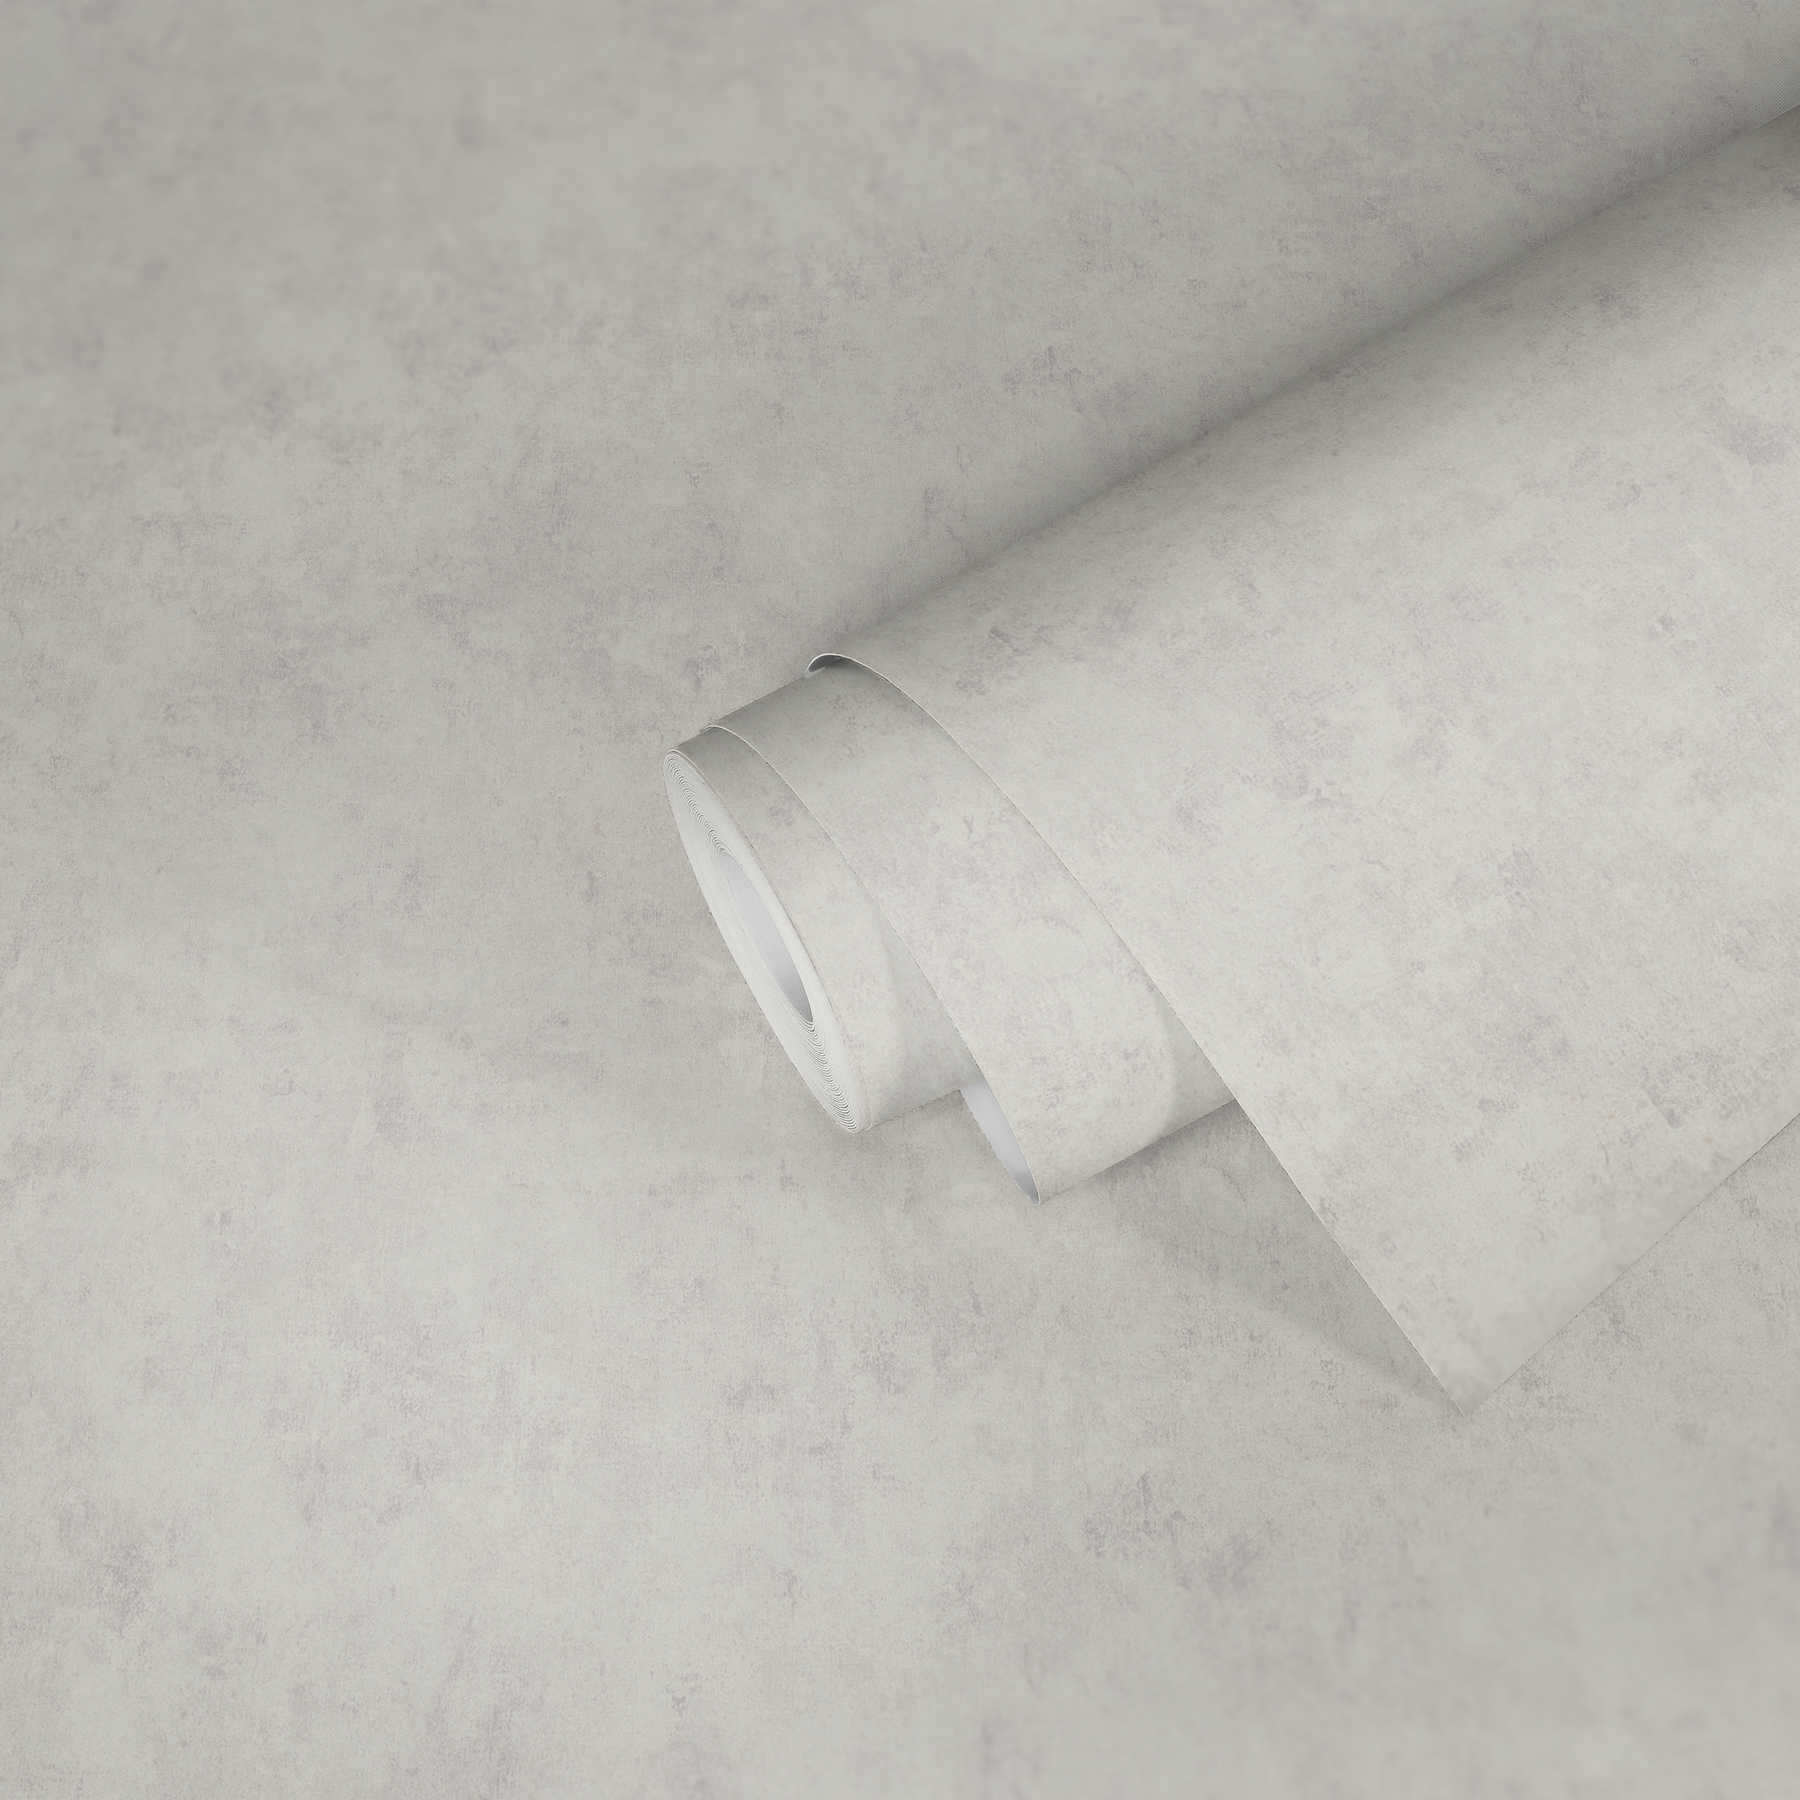             Carta da parati effetto cemento grigio chiaro con tratteggio, motivo a texture ed effetto lucido
        